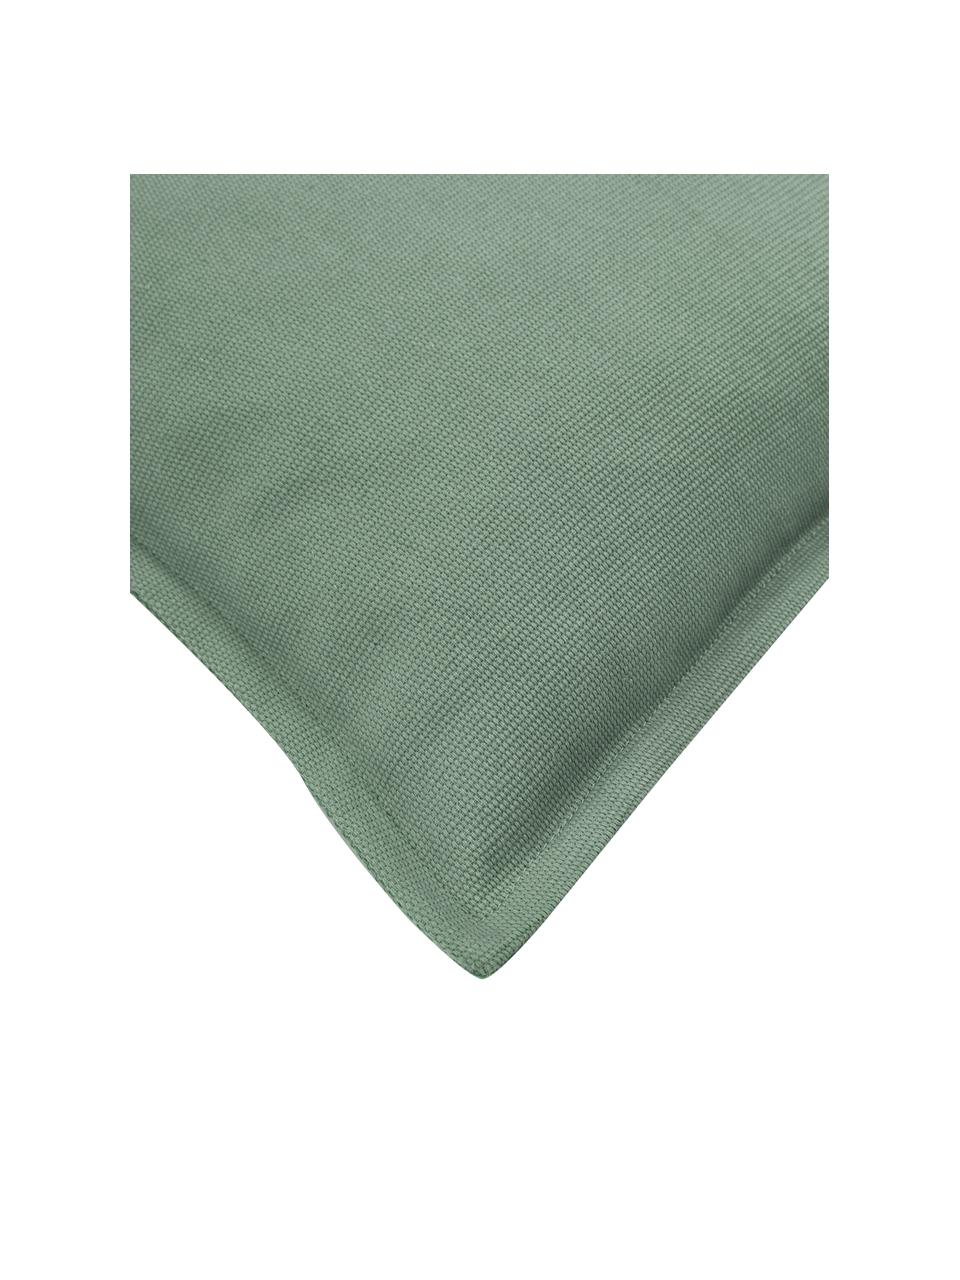 Baumwoll-Kissenhülle Mads mit Kederumrandung in Salbeigrün, 100% Baumwolle, Salbeigrün, B 30 x L 50 cm